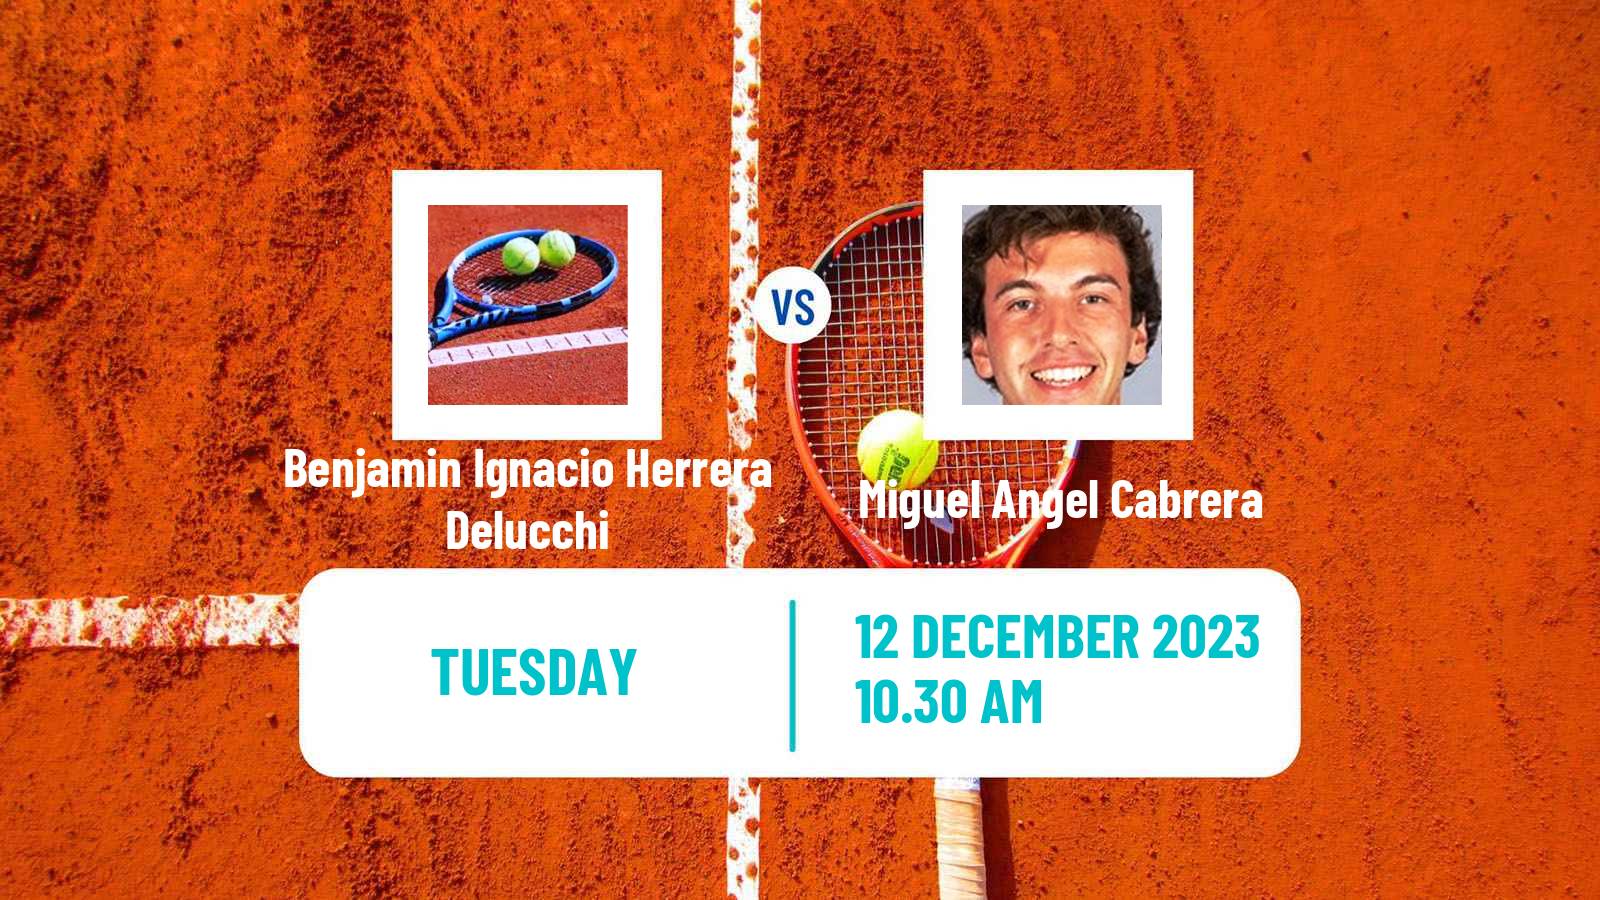 Tennis ITF M15 Concepcion 2 Men Benjamin Ignacio Herrera Delucchi - Miguel Angel Cabrera